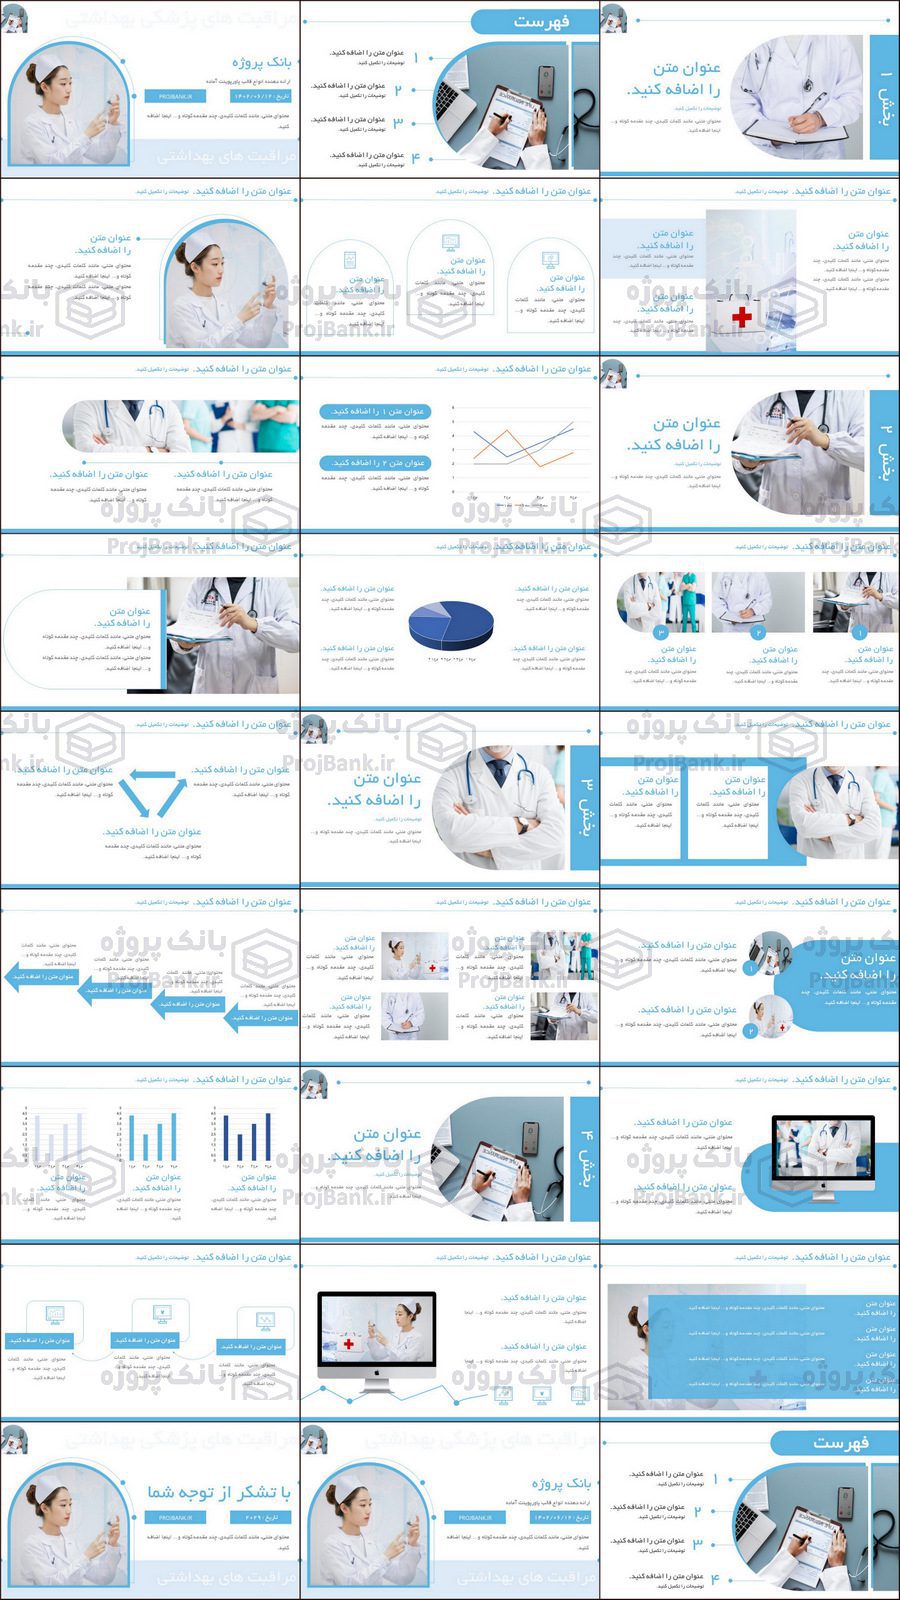 تصویر کلی از تمام اسلاید های قالب پاورپوینت مراقبت های پزشکی با تم آبی